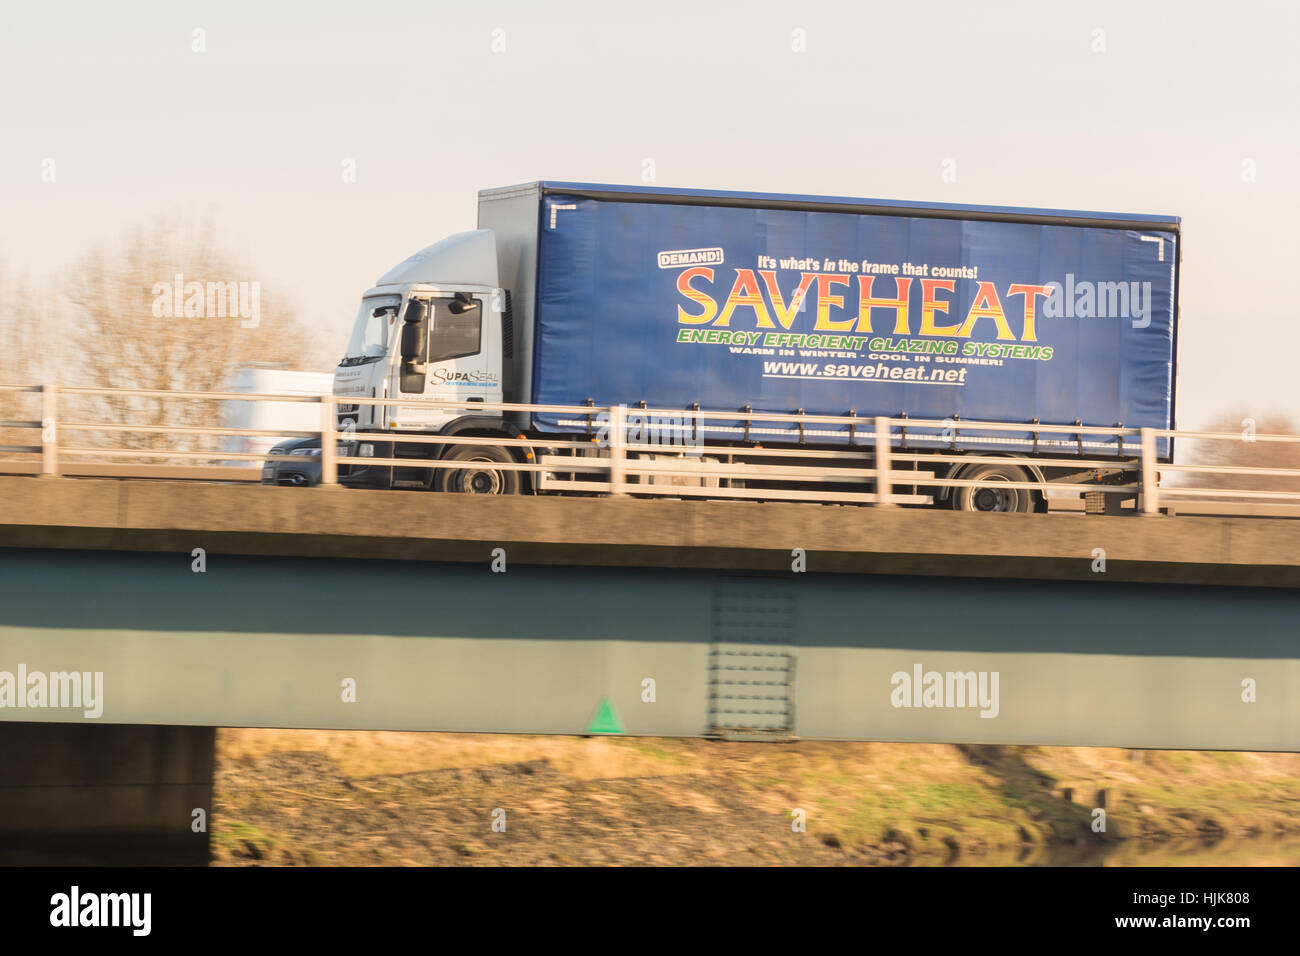 Saveheat camion de livraison - Écosse, Royaume-Uni Banque D'Images